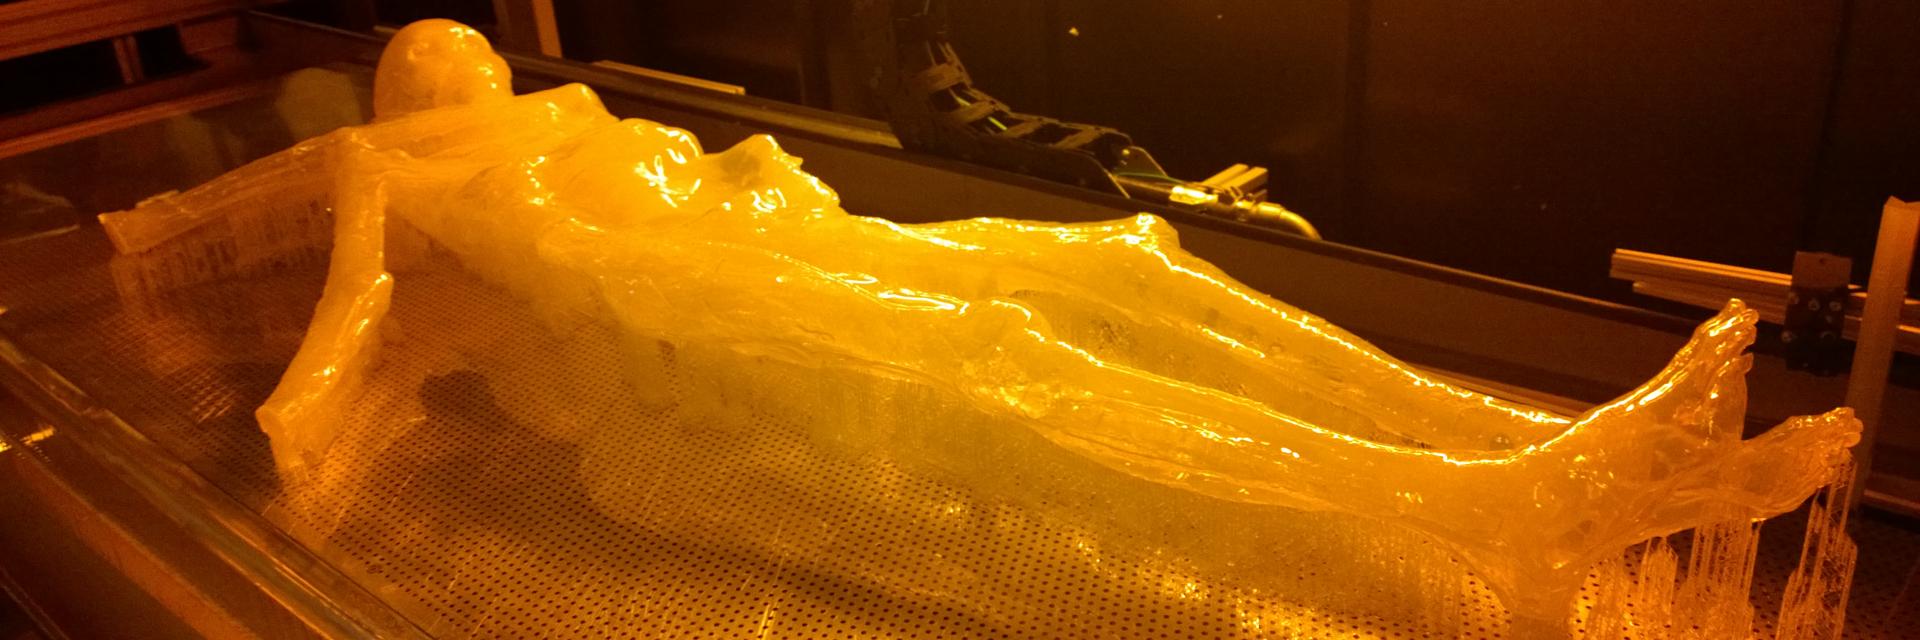 A 3D-printed mummified body